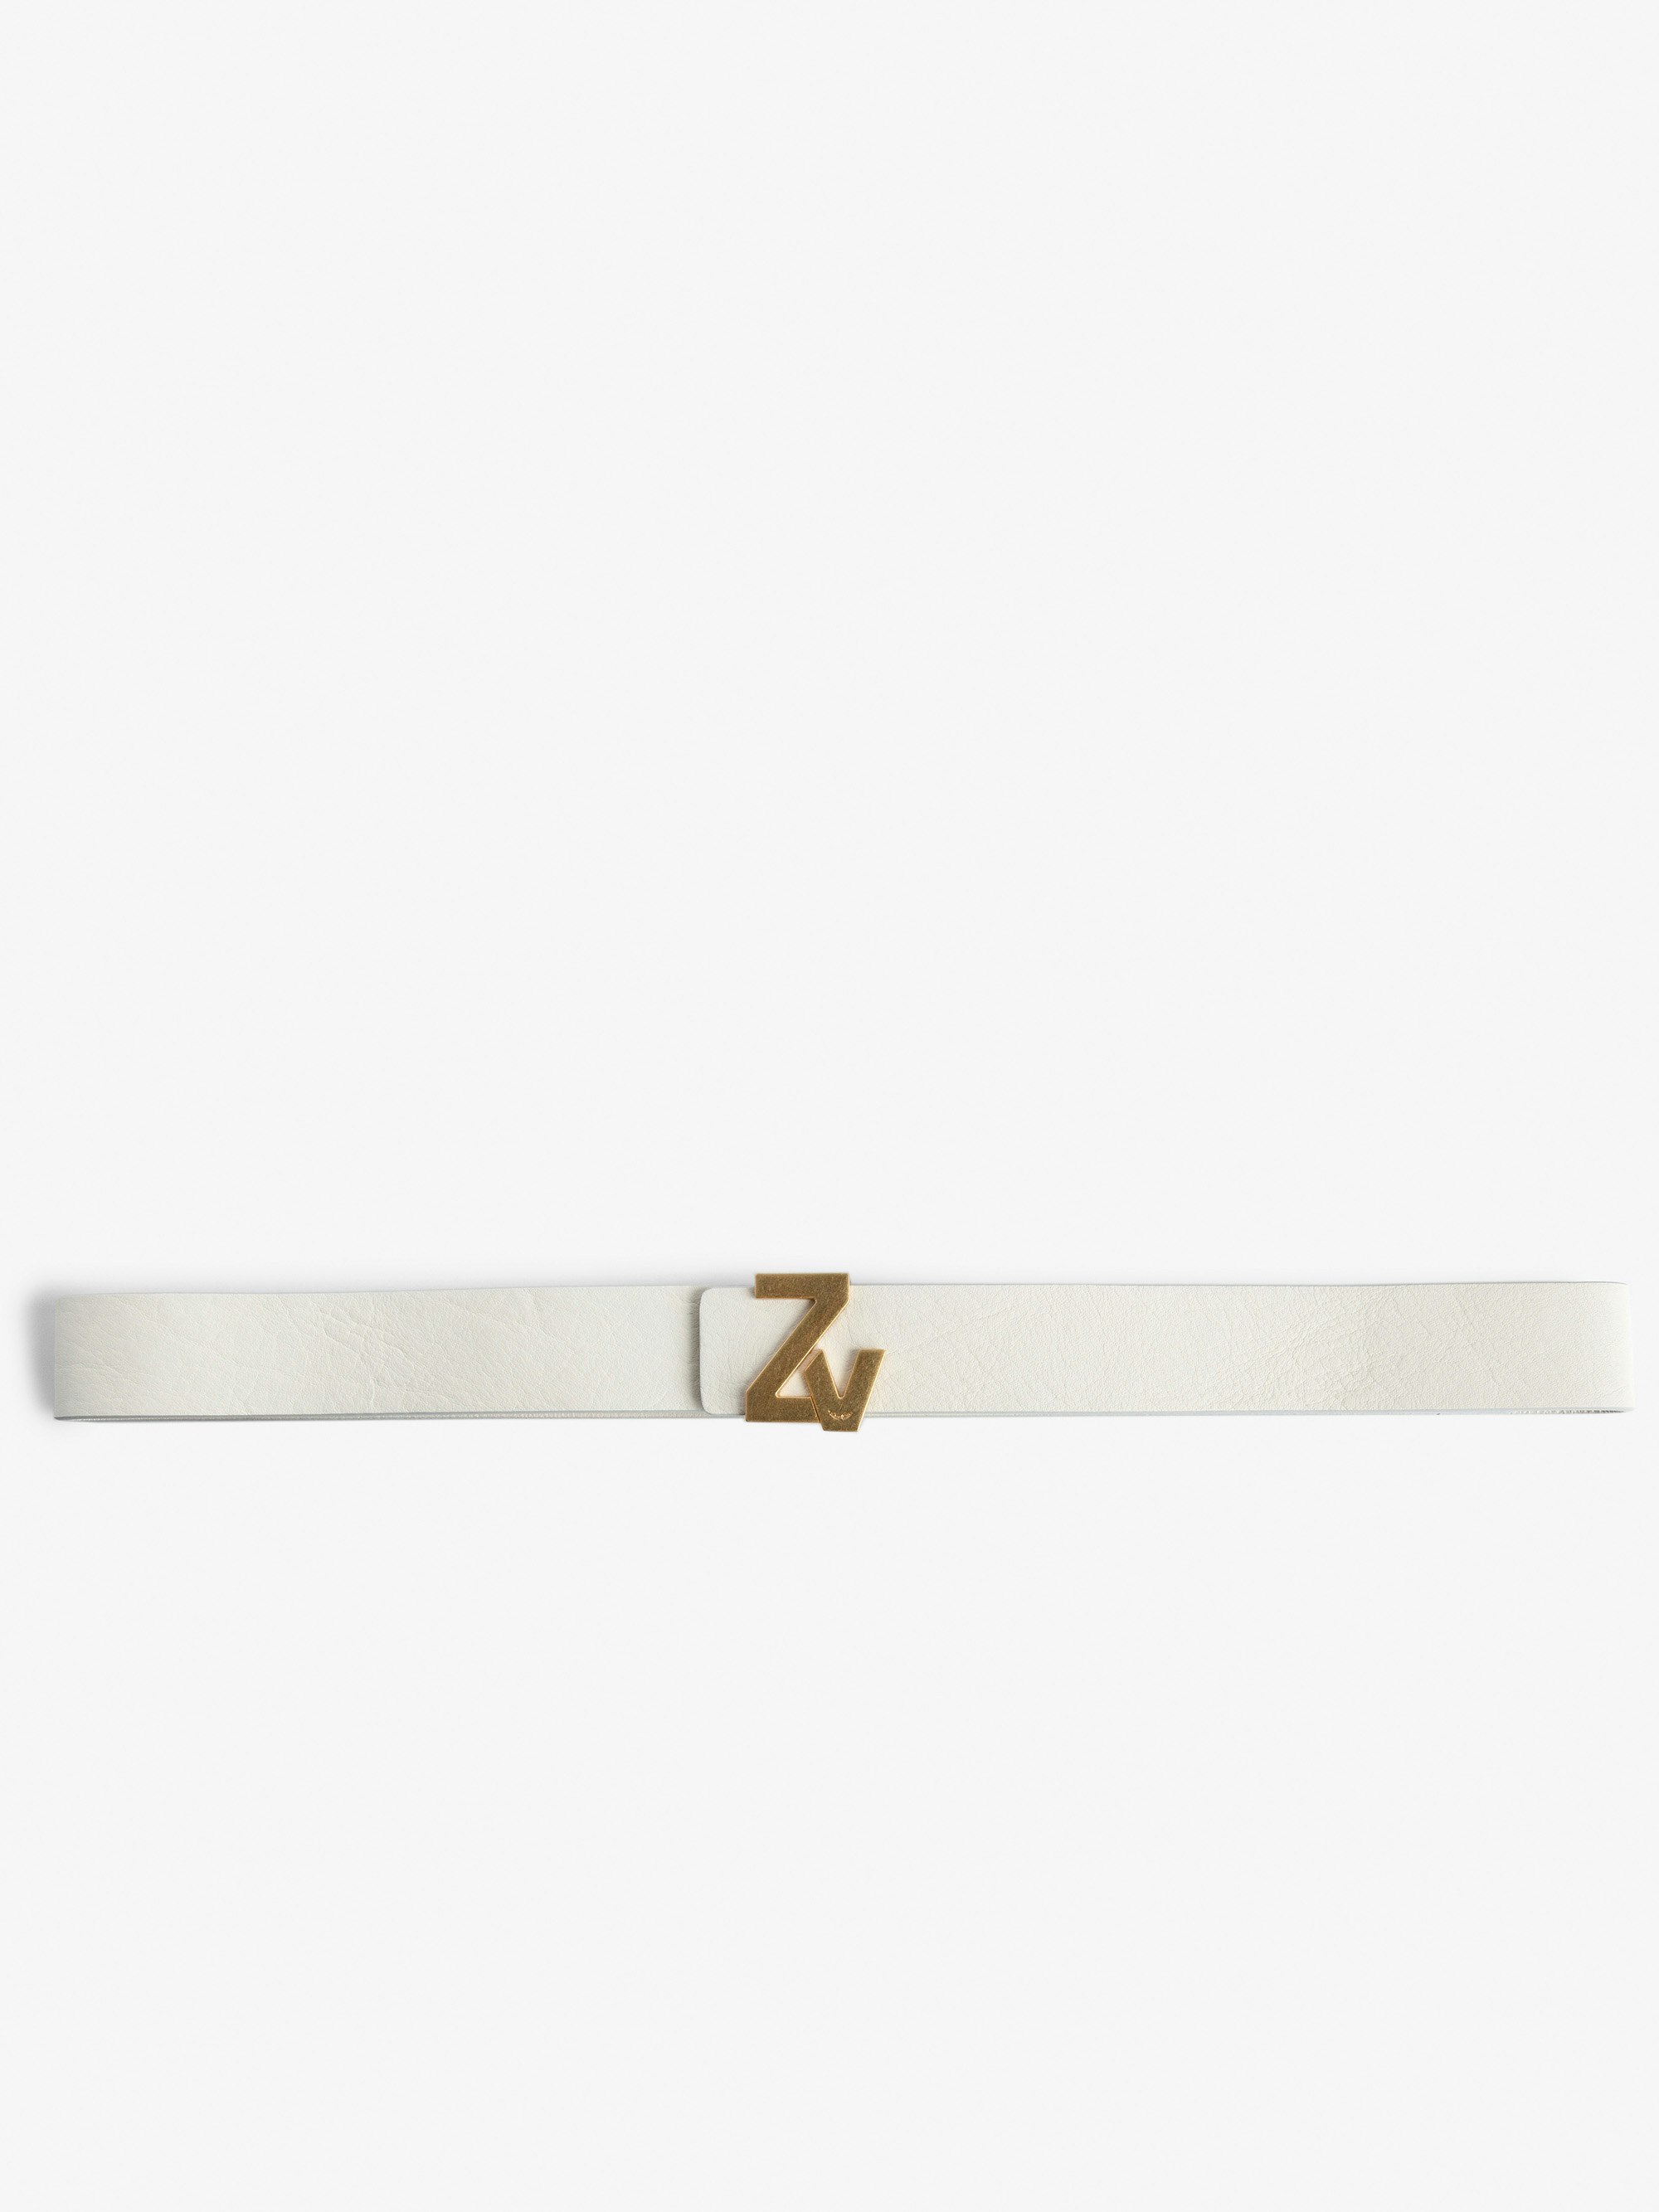 Cinturón ZV Initiale La Belt - Cinturón de color crudo de piel para mujer con hebilla ZV dorada.